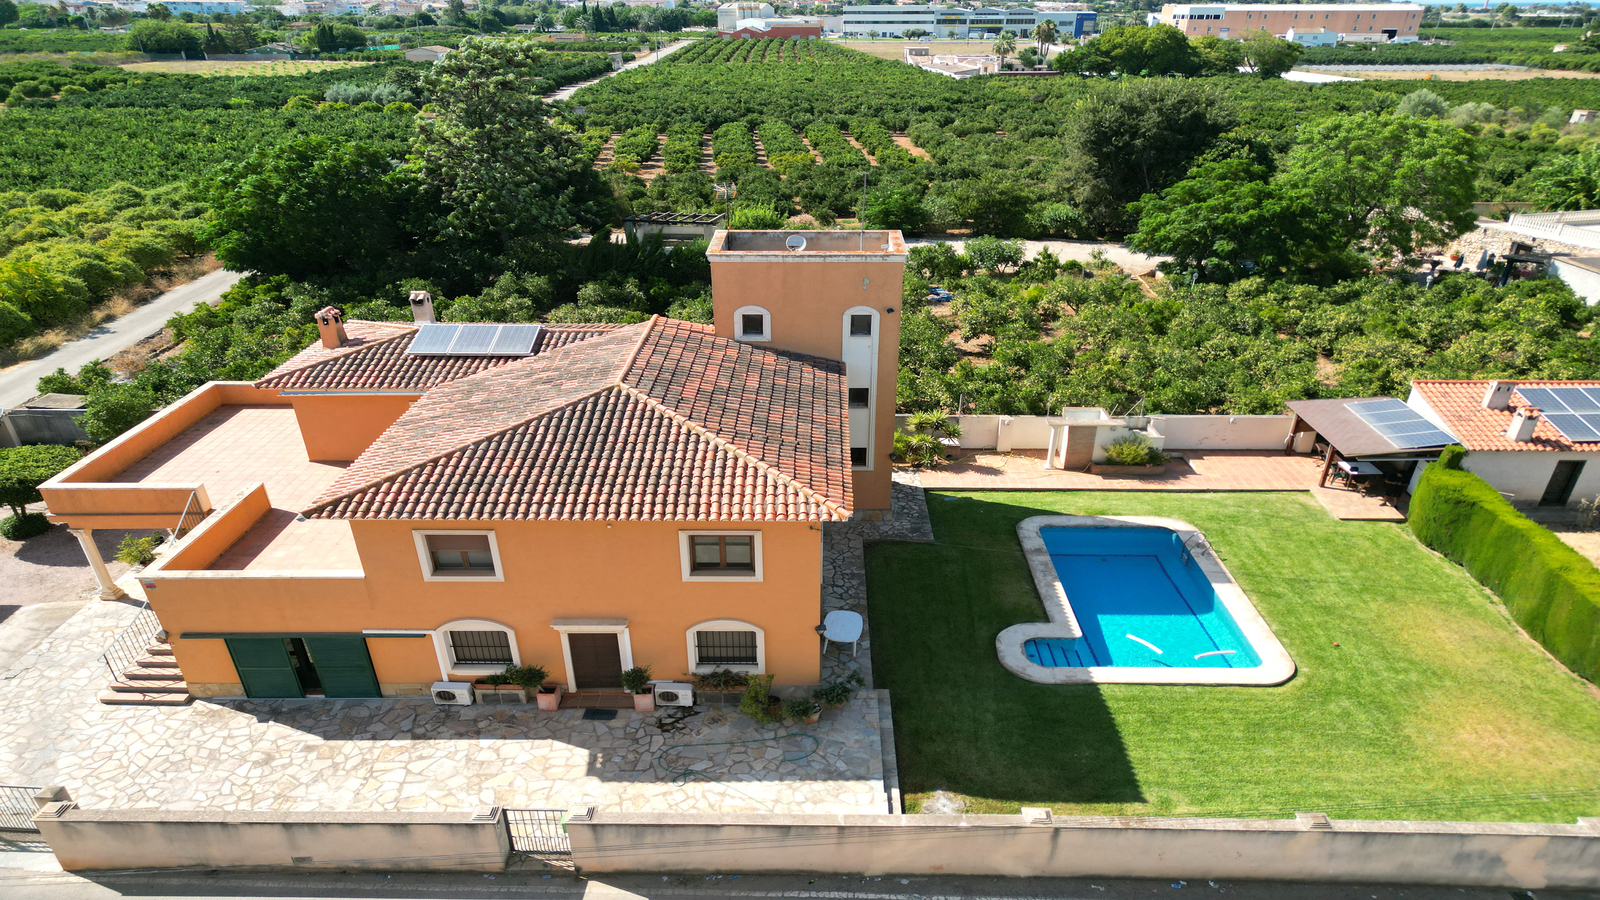 Villa 4 chambres avec XXL grande terrasse ensoleillée, grande piscine, maison BBQ avec une cuisine d'été, jardin avec arbres fruitiers